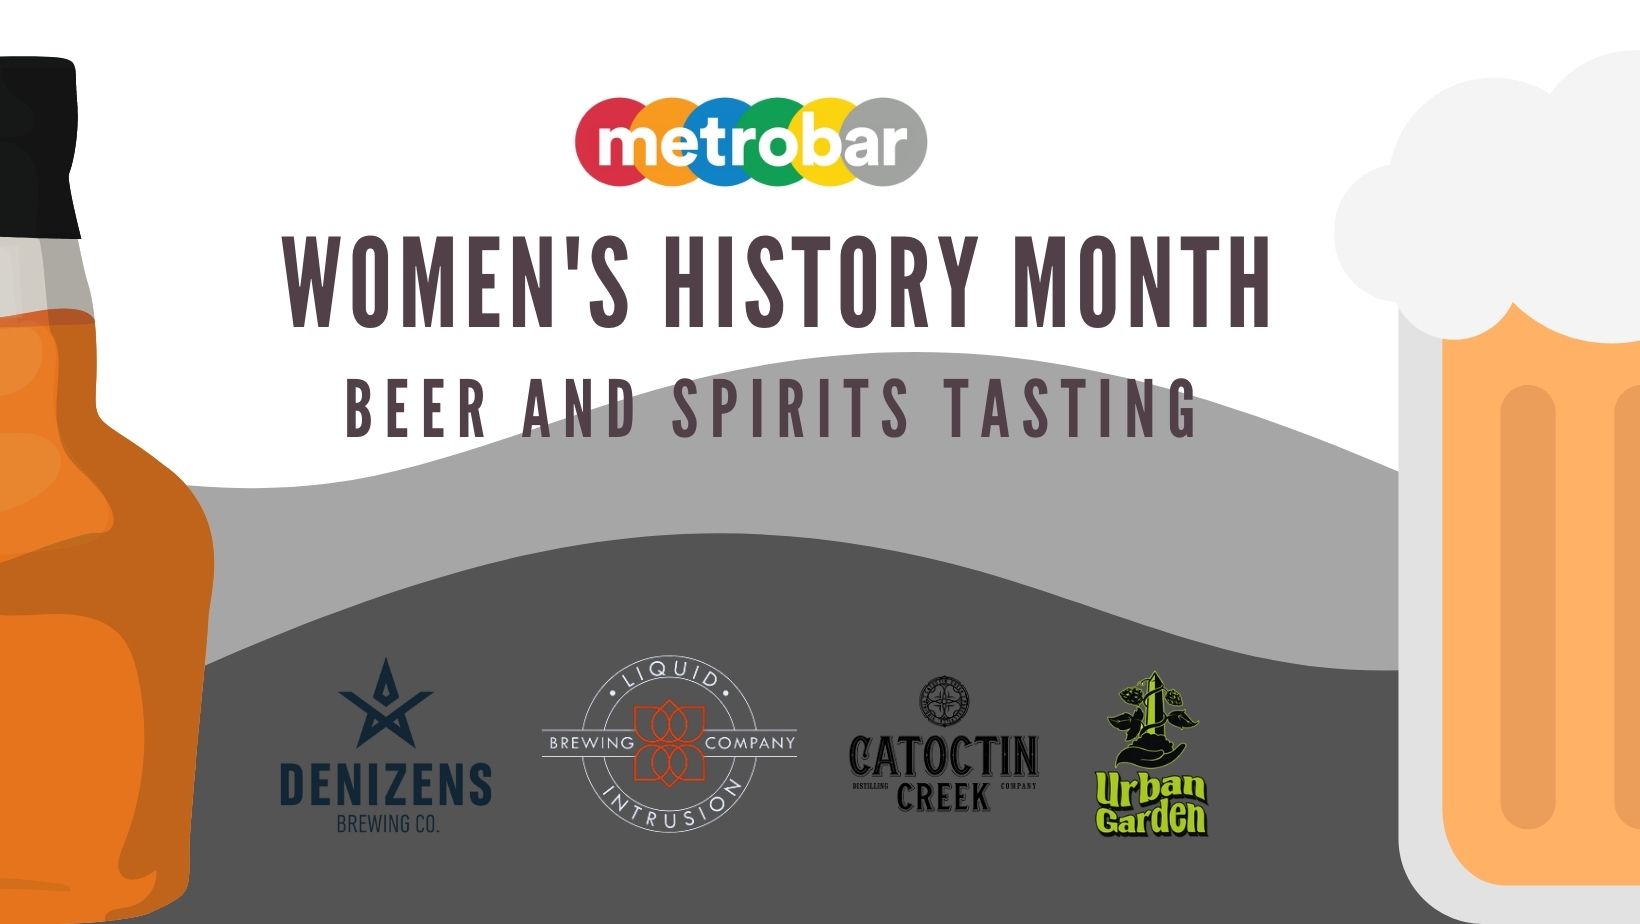 Women Brewers & Distillers Tasting